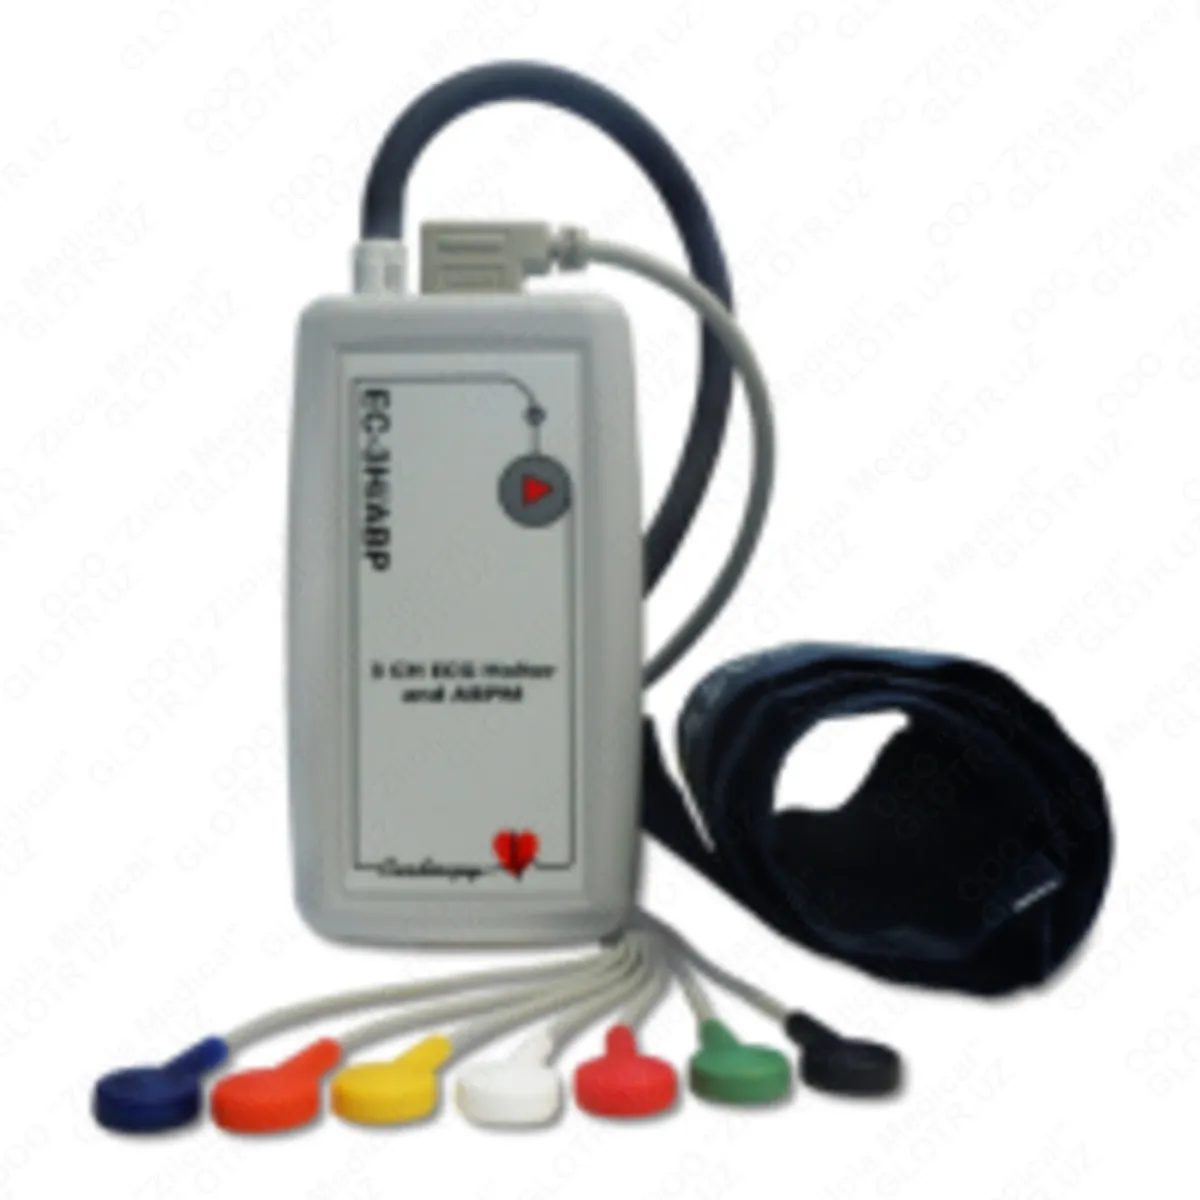 EKG va qon bosimi EC-3H/ABP uchun kombinatsiyalangan Holter monitoring tizimi#1